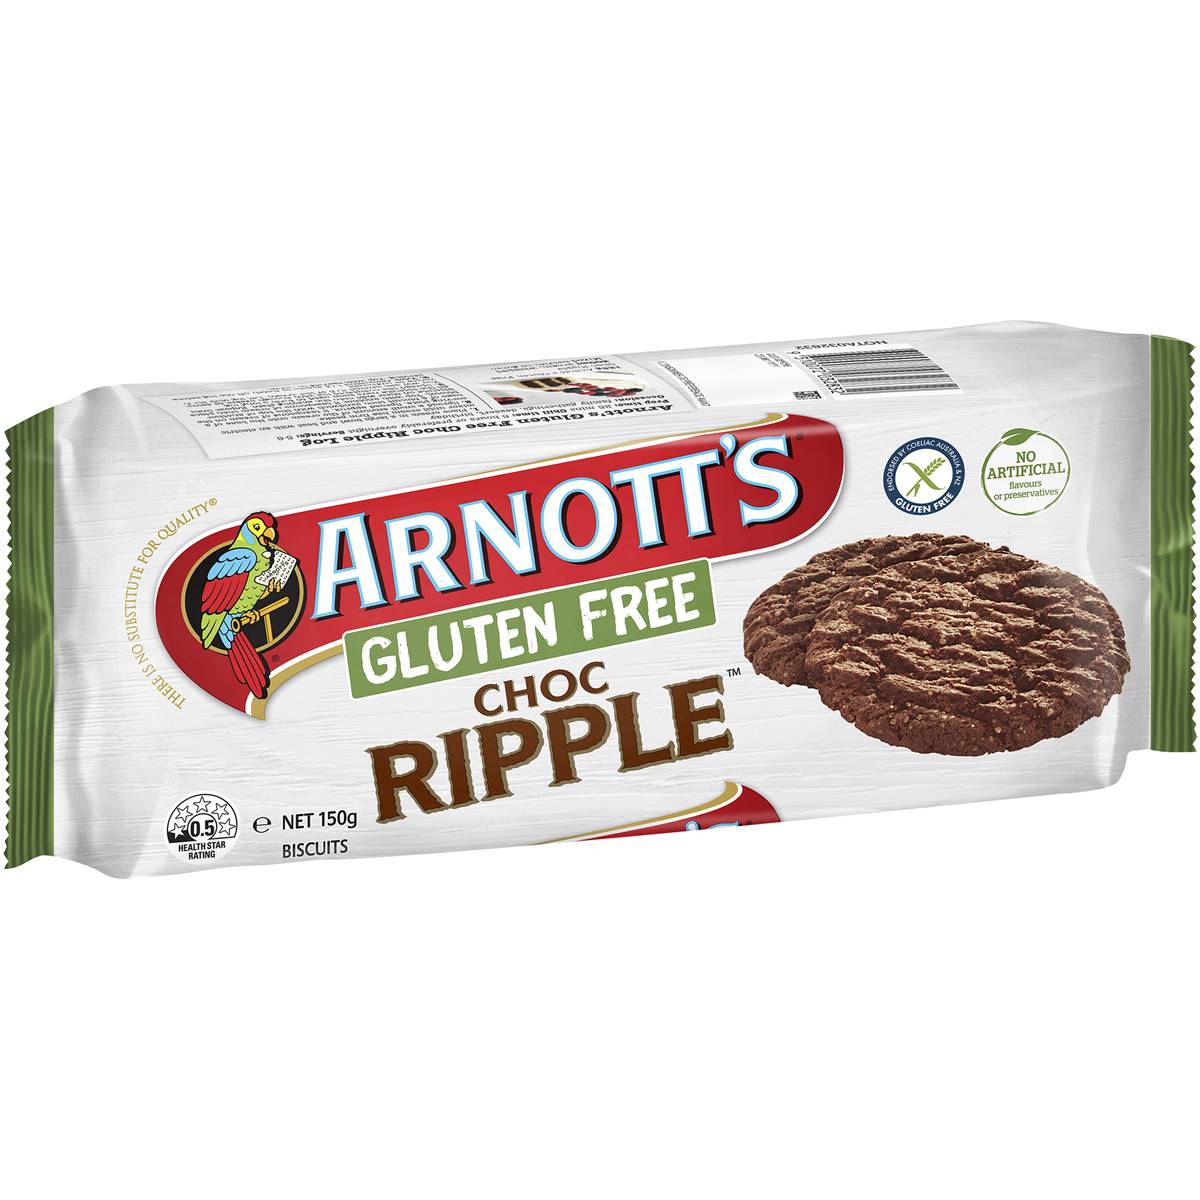 Arnott's Gluten Free Choc Ripple Plain Biscuits 150g